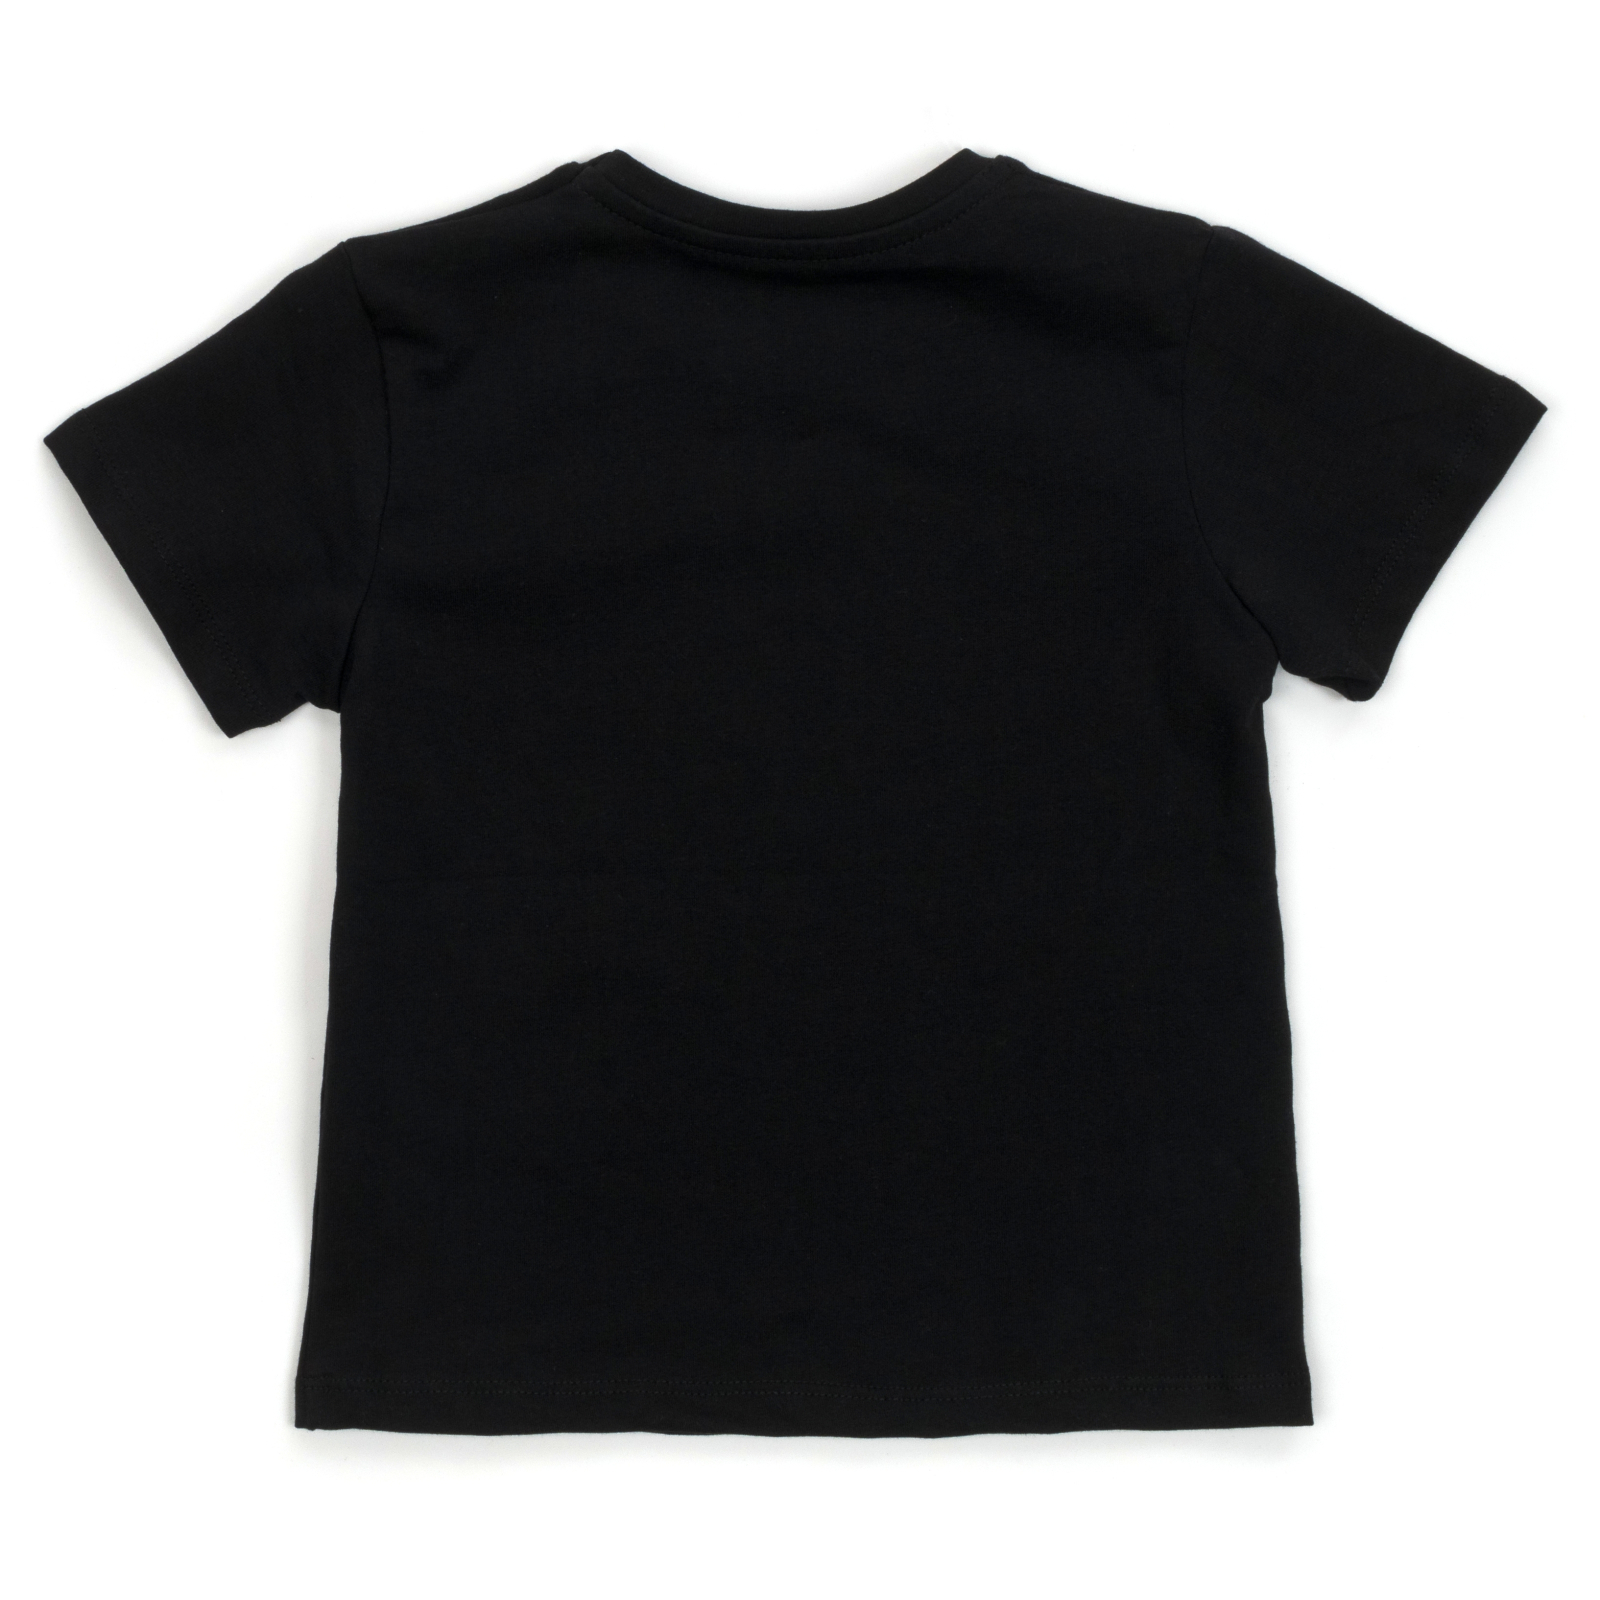 Набор детской одежды H.A футболка с бриджами (M-120-122B-black) изображение 5